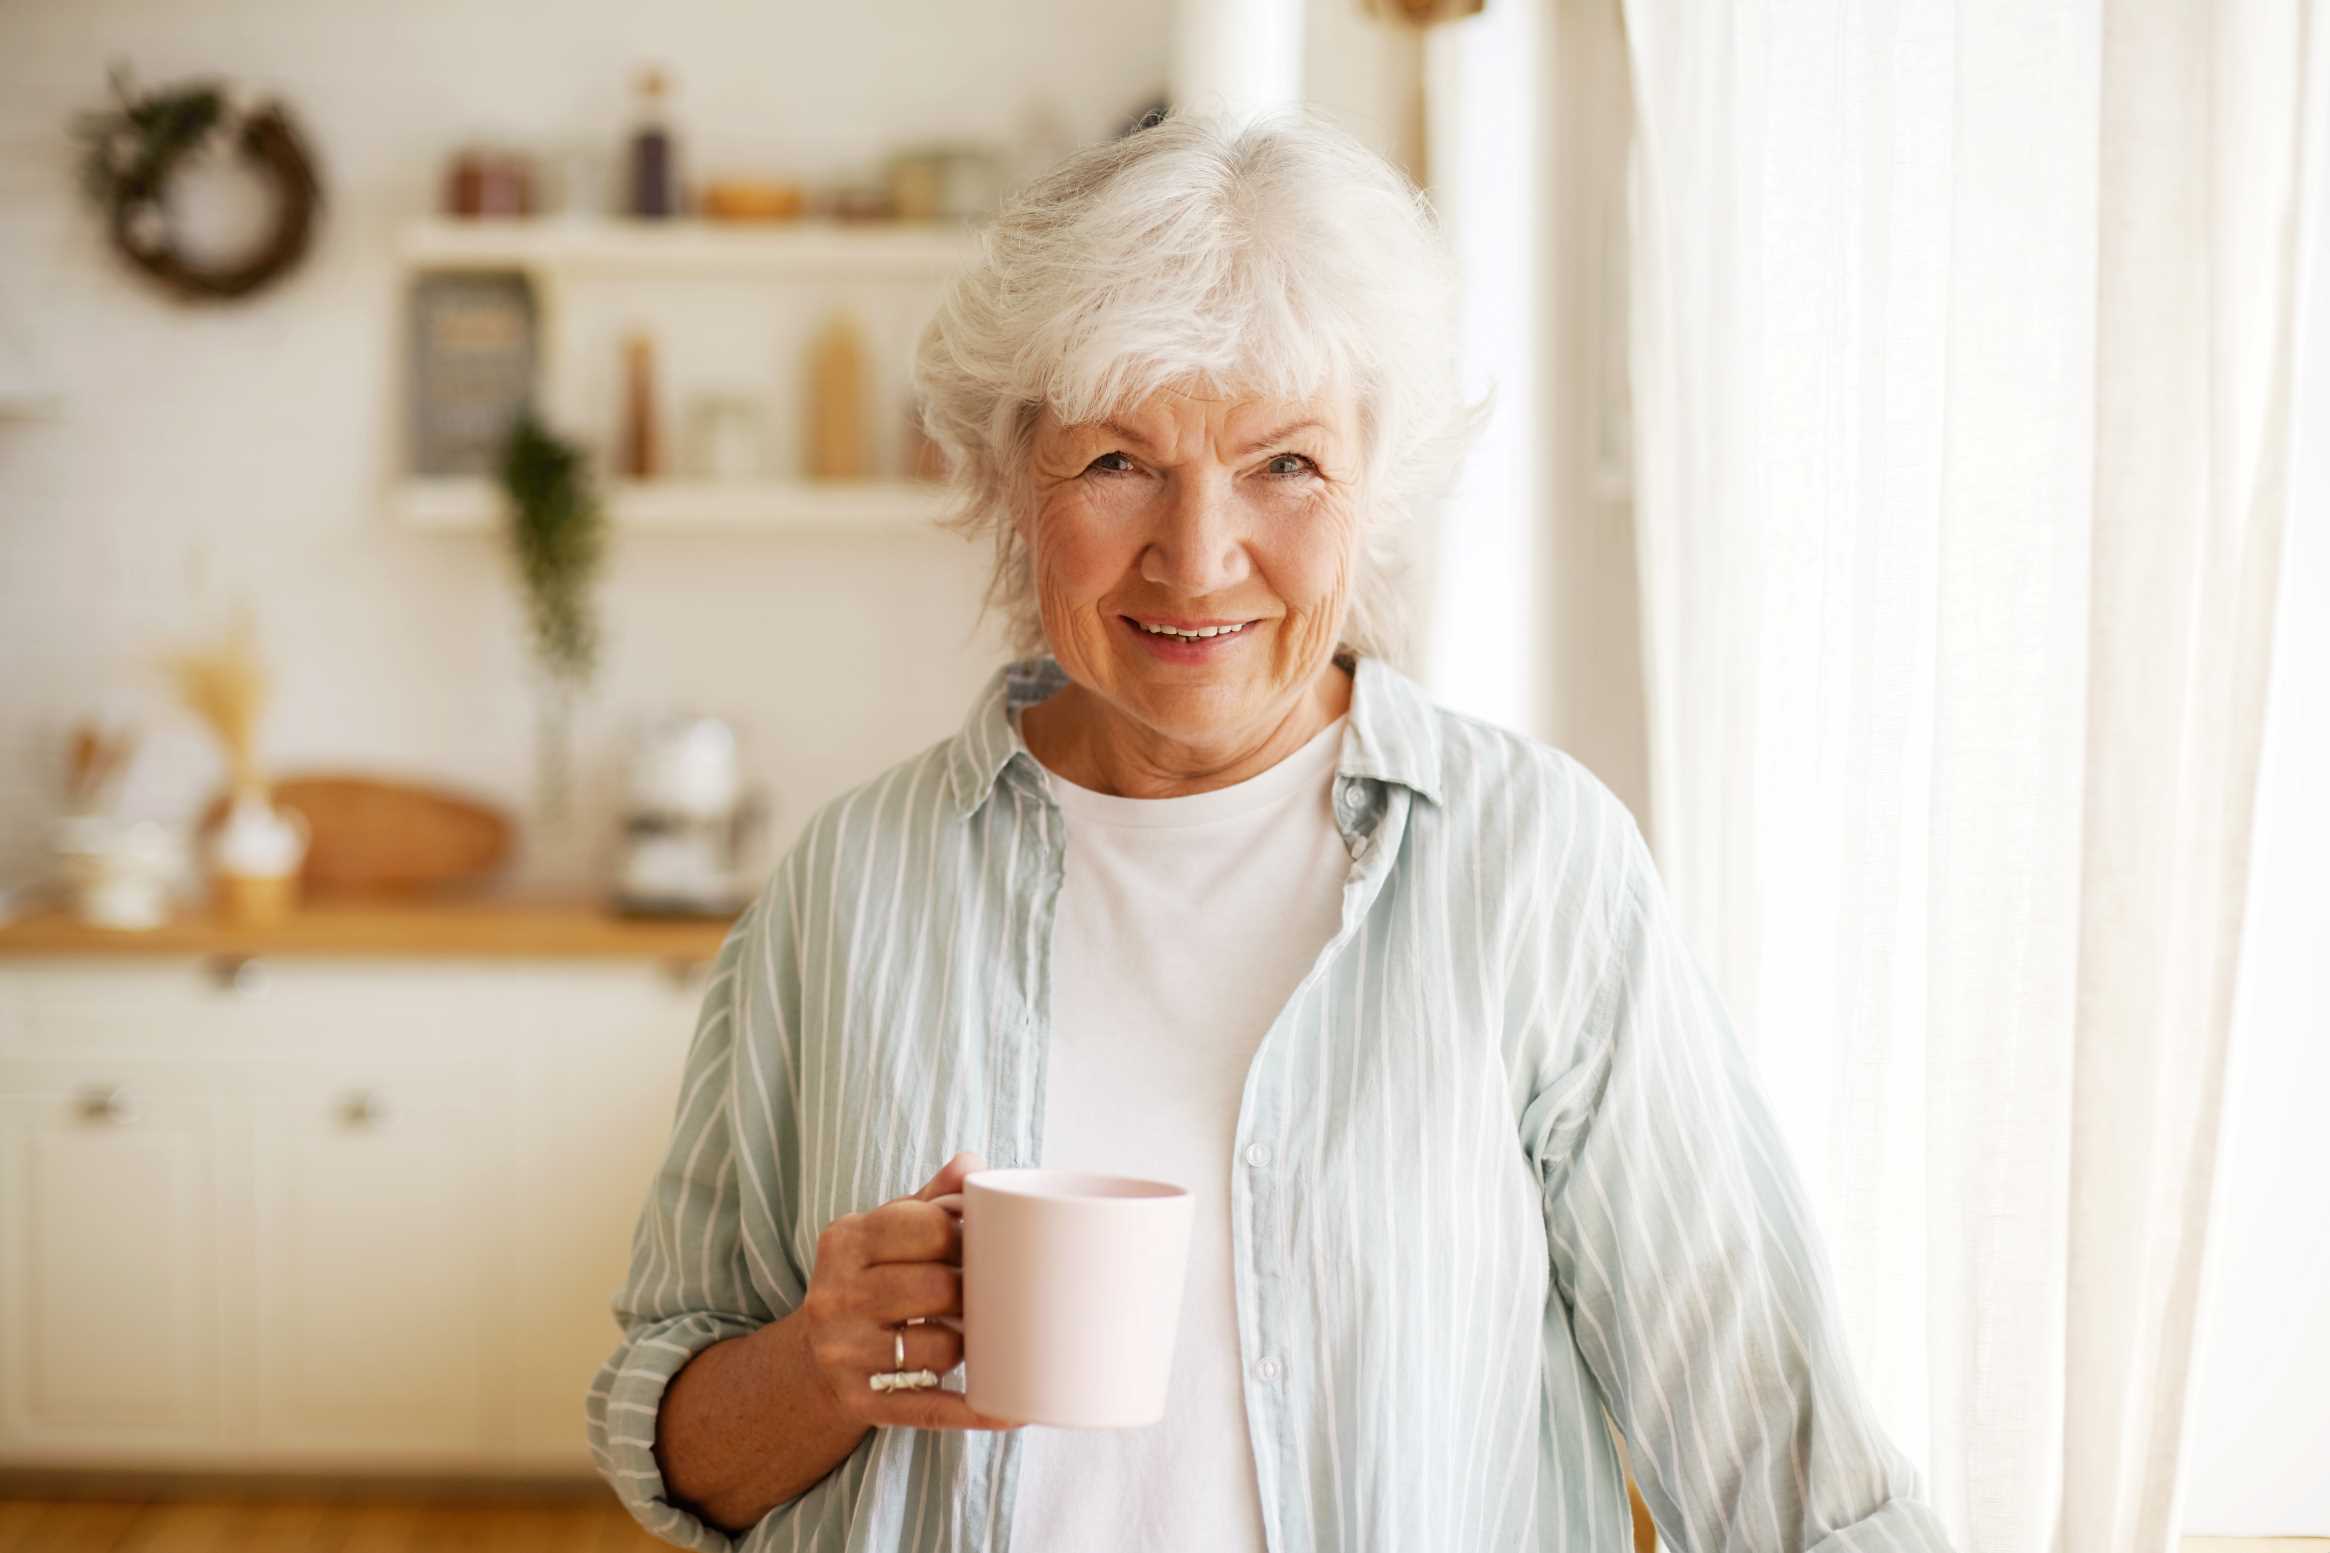 7 Rekomendasi Susu untuk Lansia 50 Tahun ke Atas agar Tubuh Selalu Bugar dan Sehat di Masa Tua